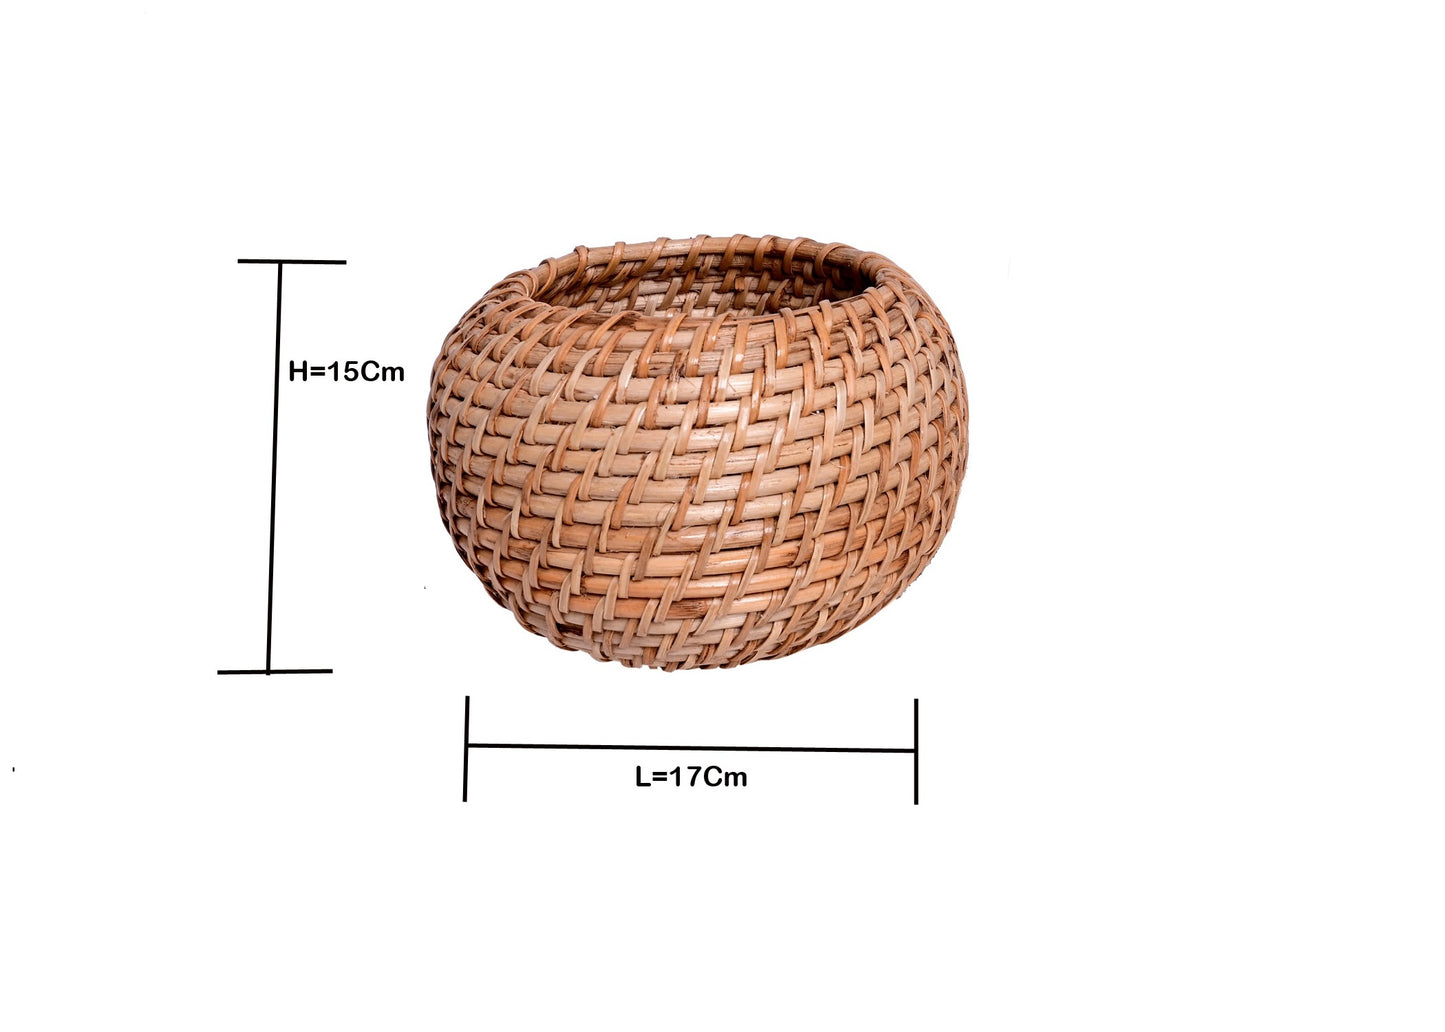 The Weaver's Nest Handmade Natural Cane Planter for Home, Table Tops, Offices, Restaurants, Garden, Cafe, Balcony, Living Room